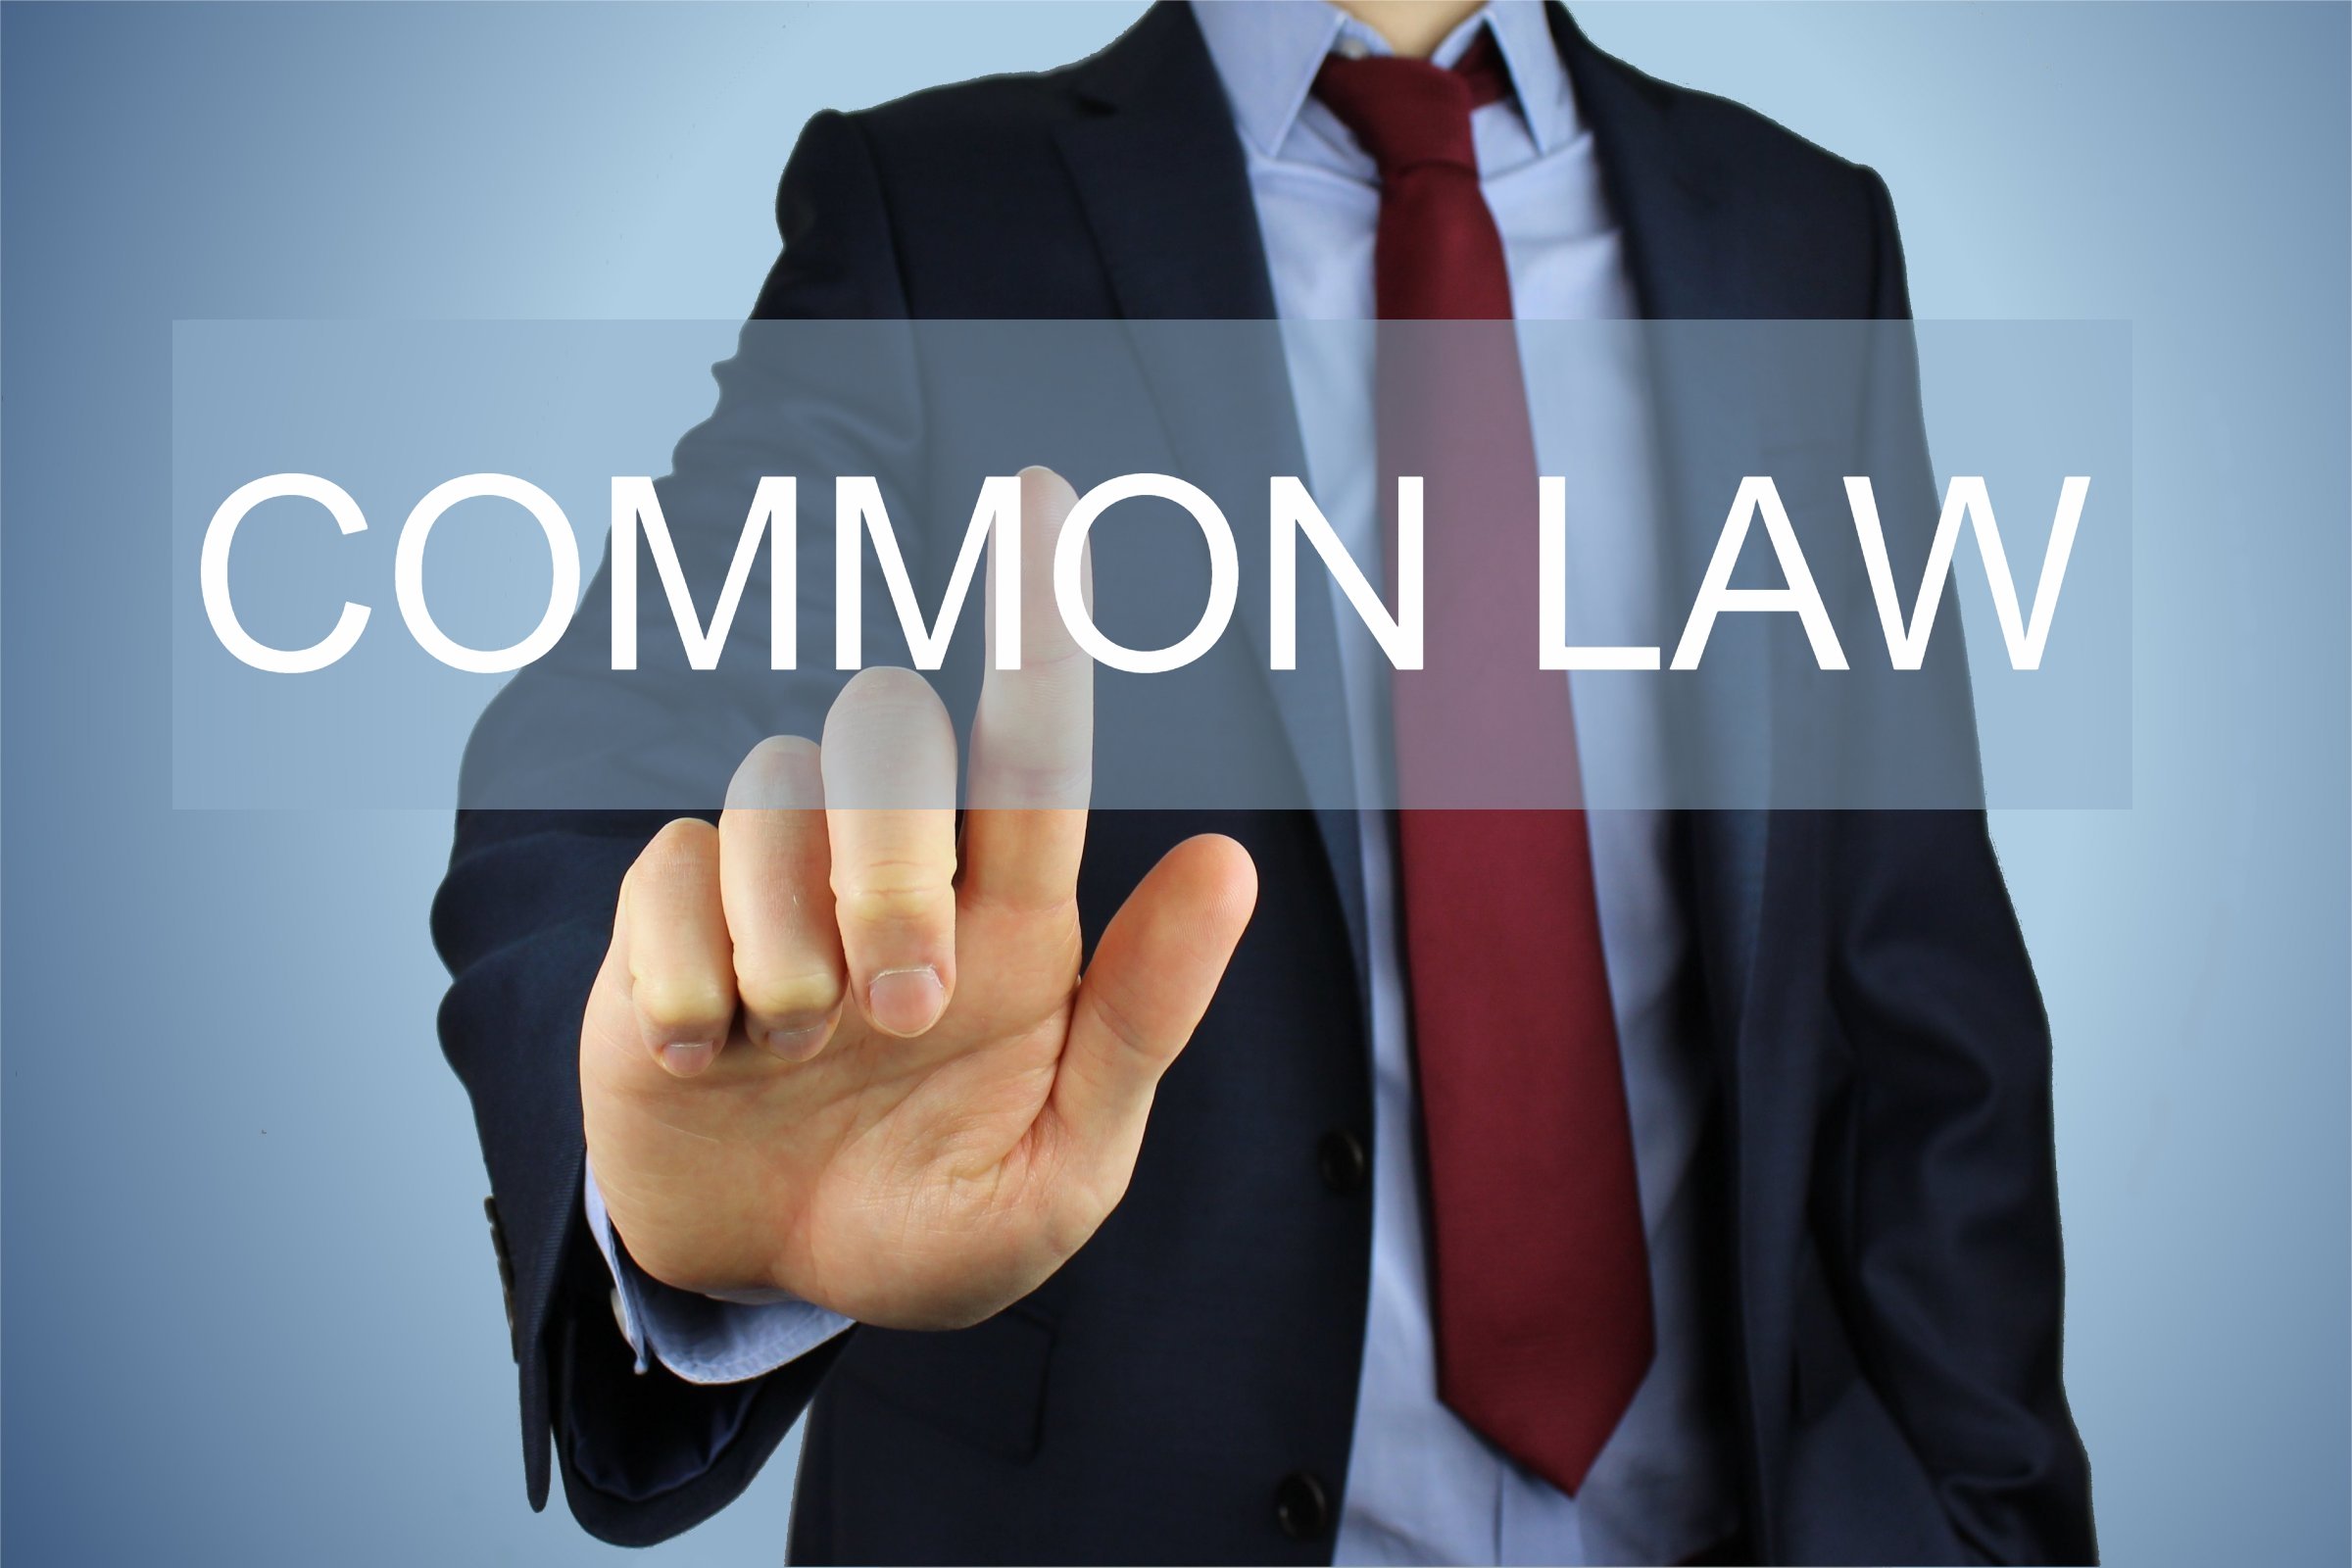 common law